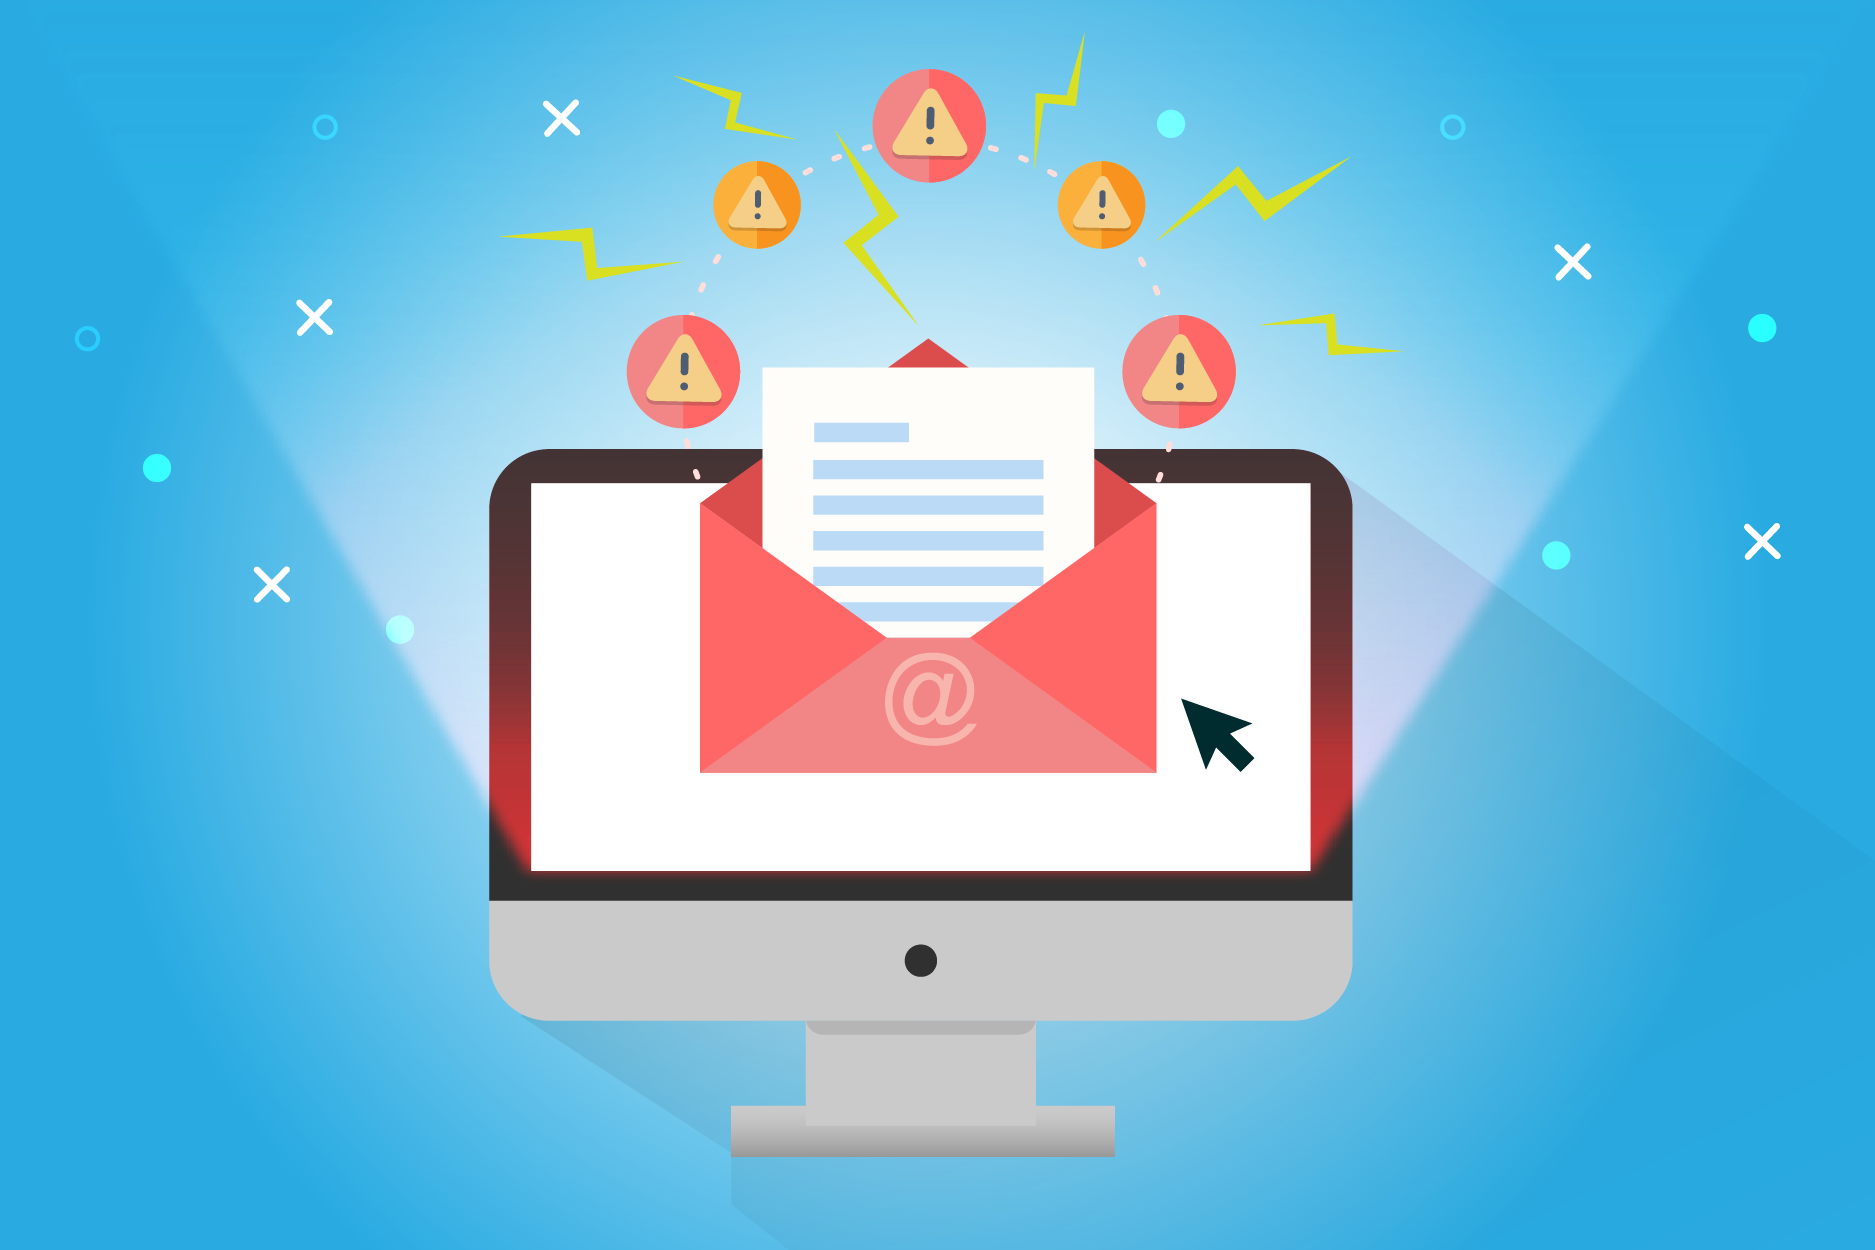 Por e-mail podem enviar spam e mensagens suspeitas para roubarem informações.